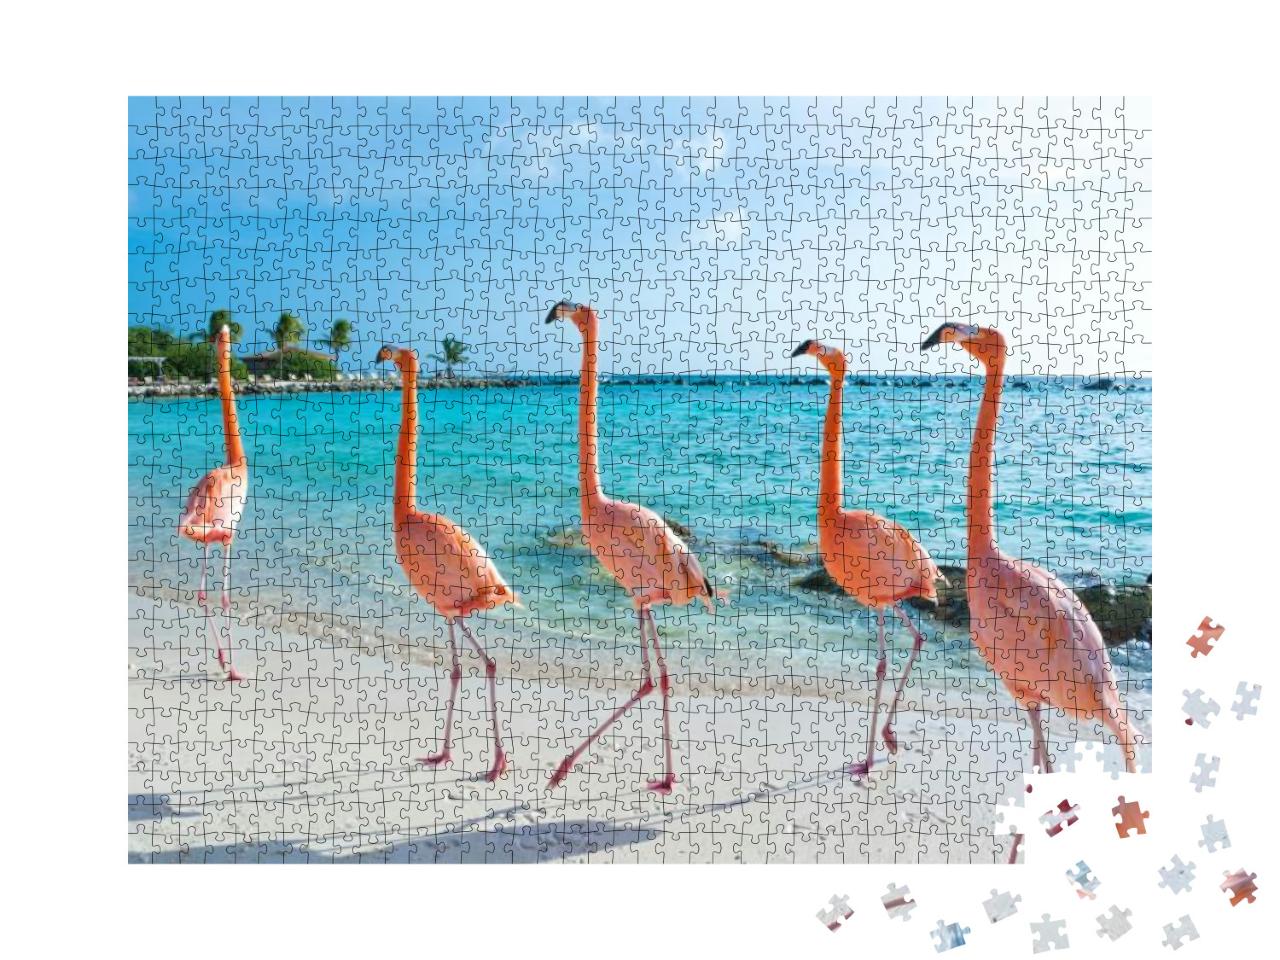 Pink Flamingo, Aruba Island... Jigsaw Puzzle with 1000 pieces